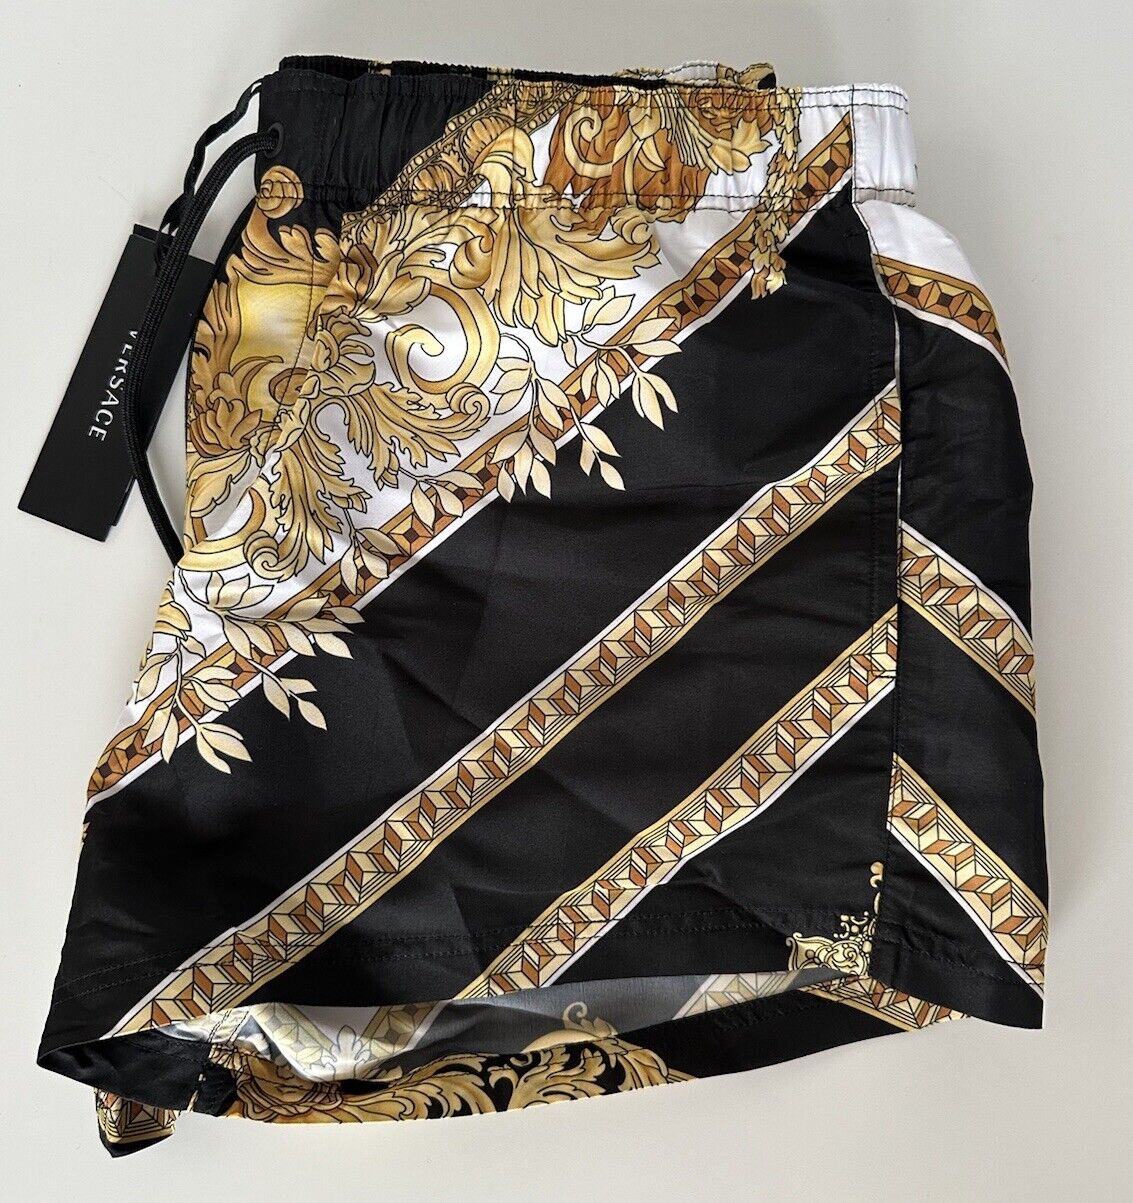 NWT $500 Versace Renaissance Men's Black/Gold Swim Shorts 50 (4 US)  IT 1006003